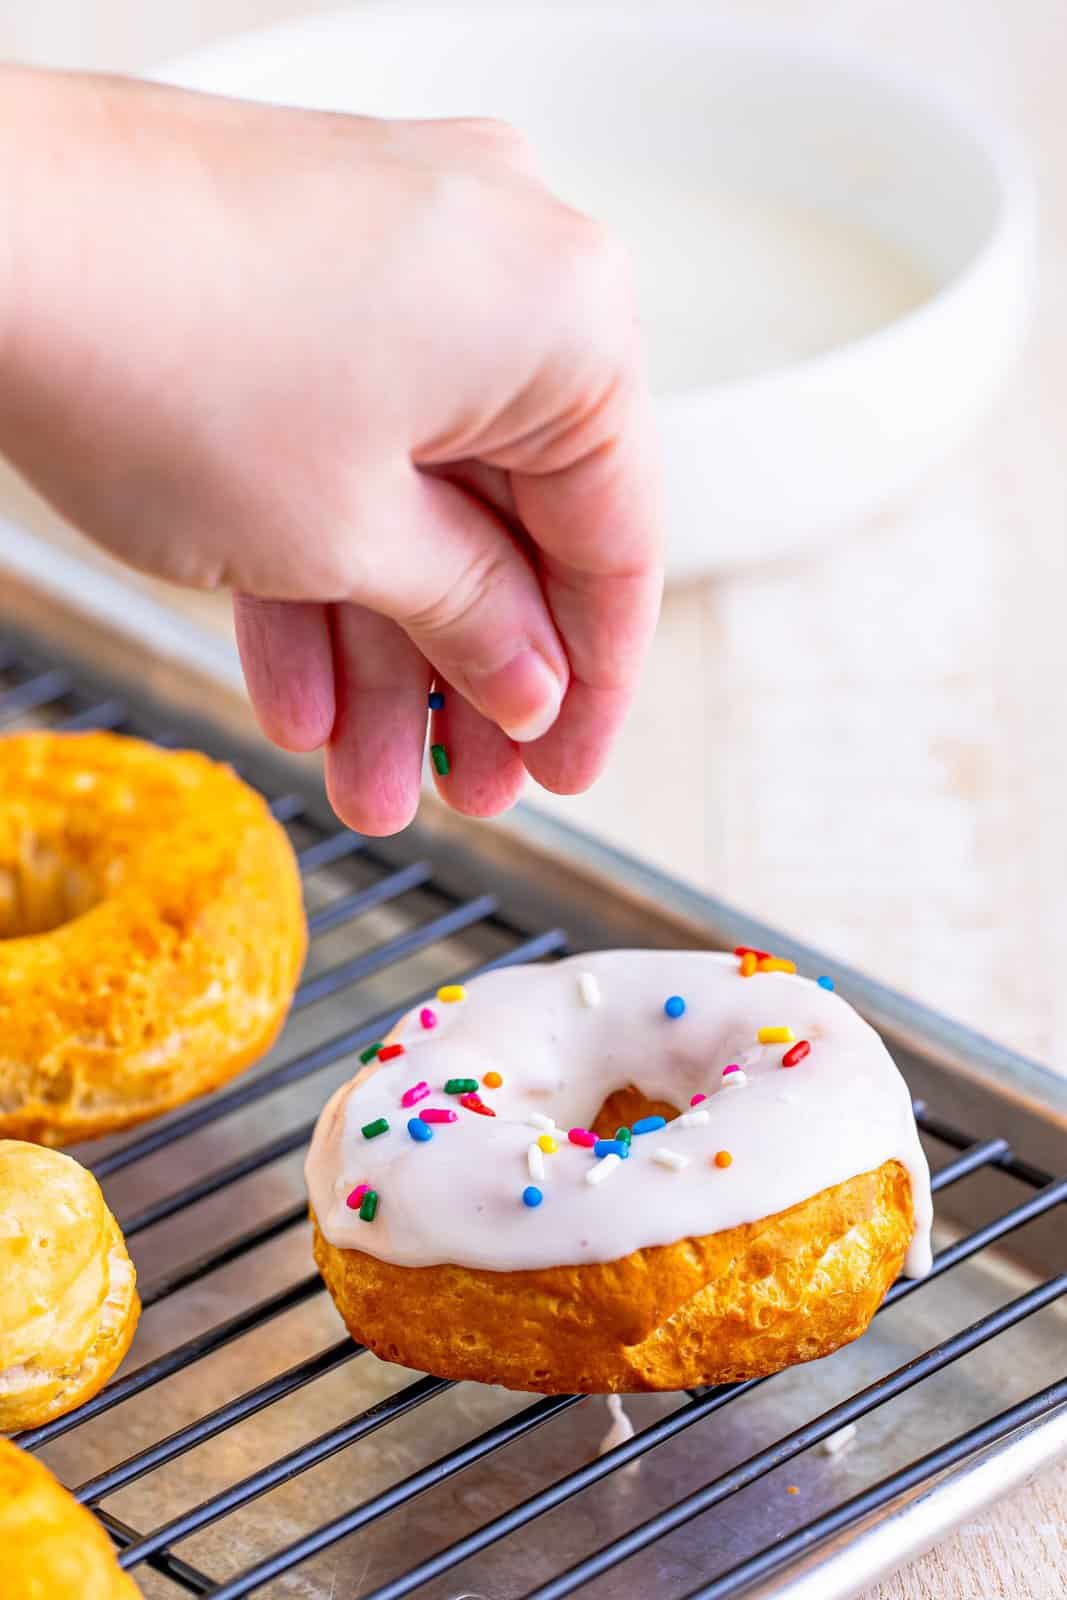 A hand sprinkling sprinkles on a vanilla glazed donut.